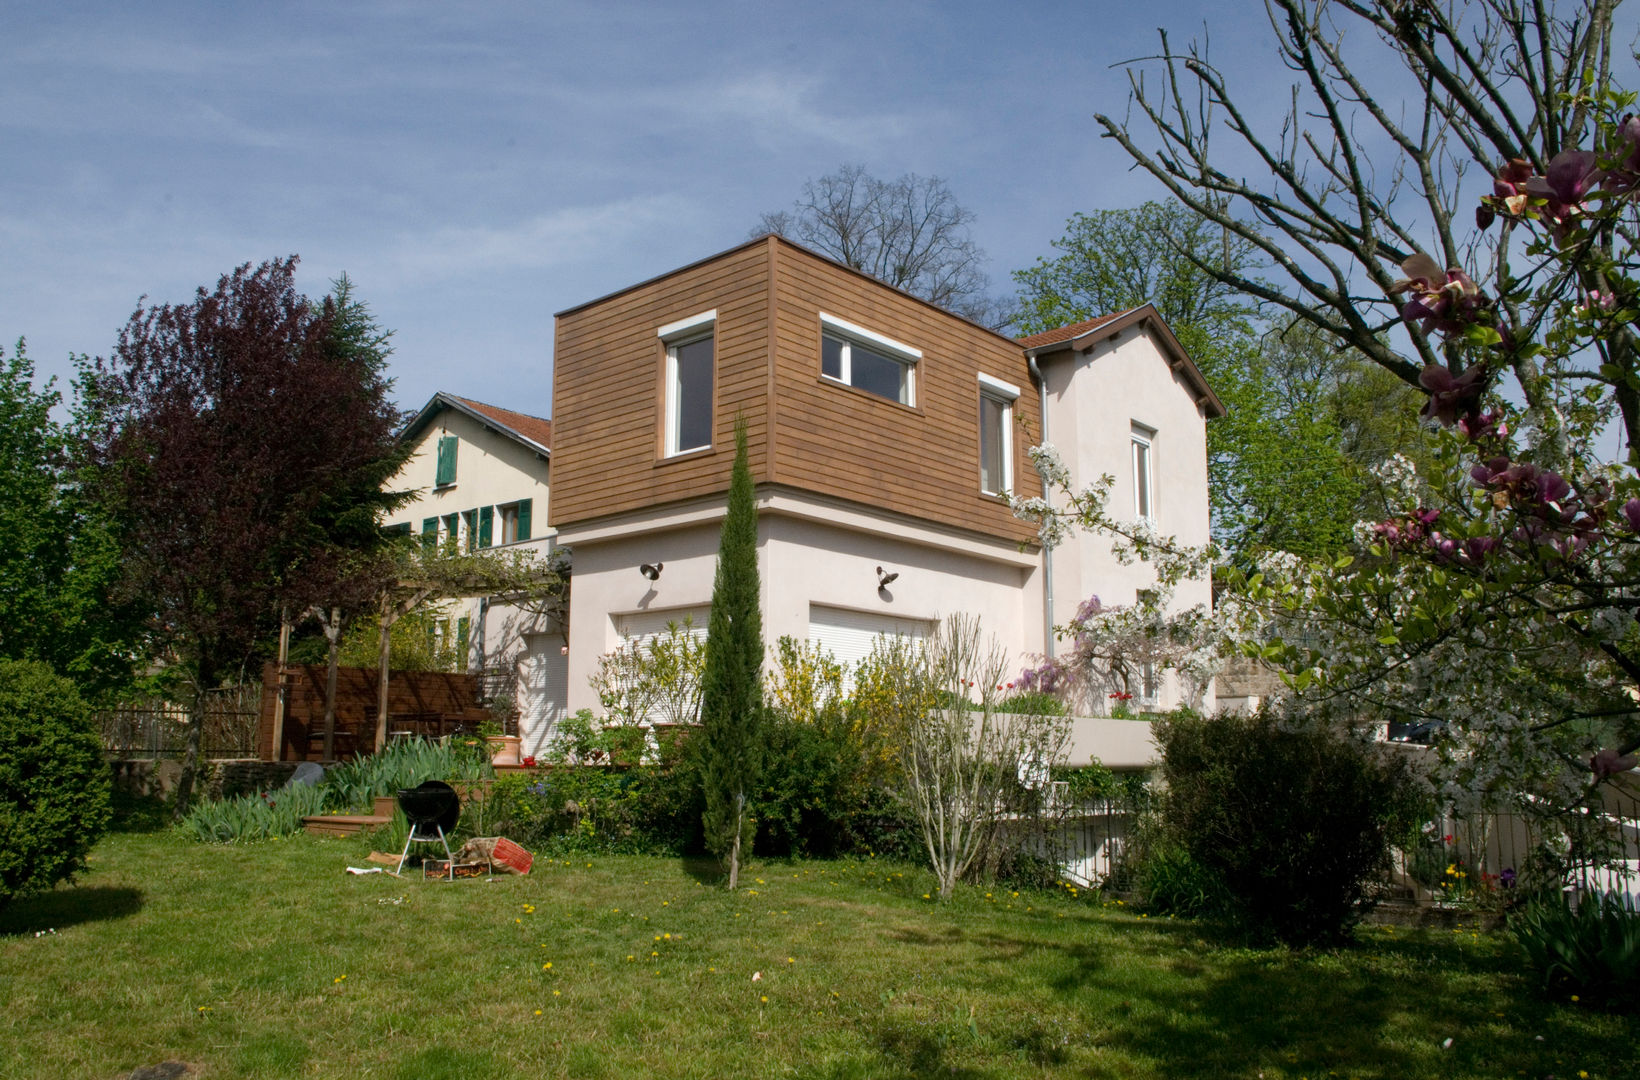 Extension bois sur terrasse, Saint Genis Laval, RGn architecte RGn architecte Casas de estilo moderno